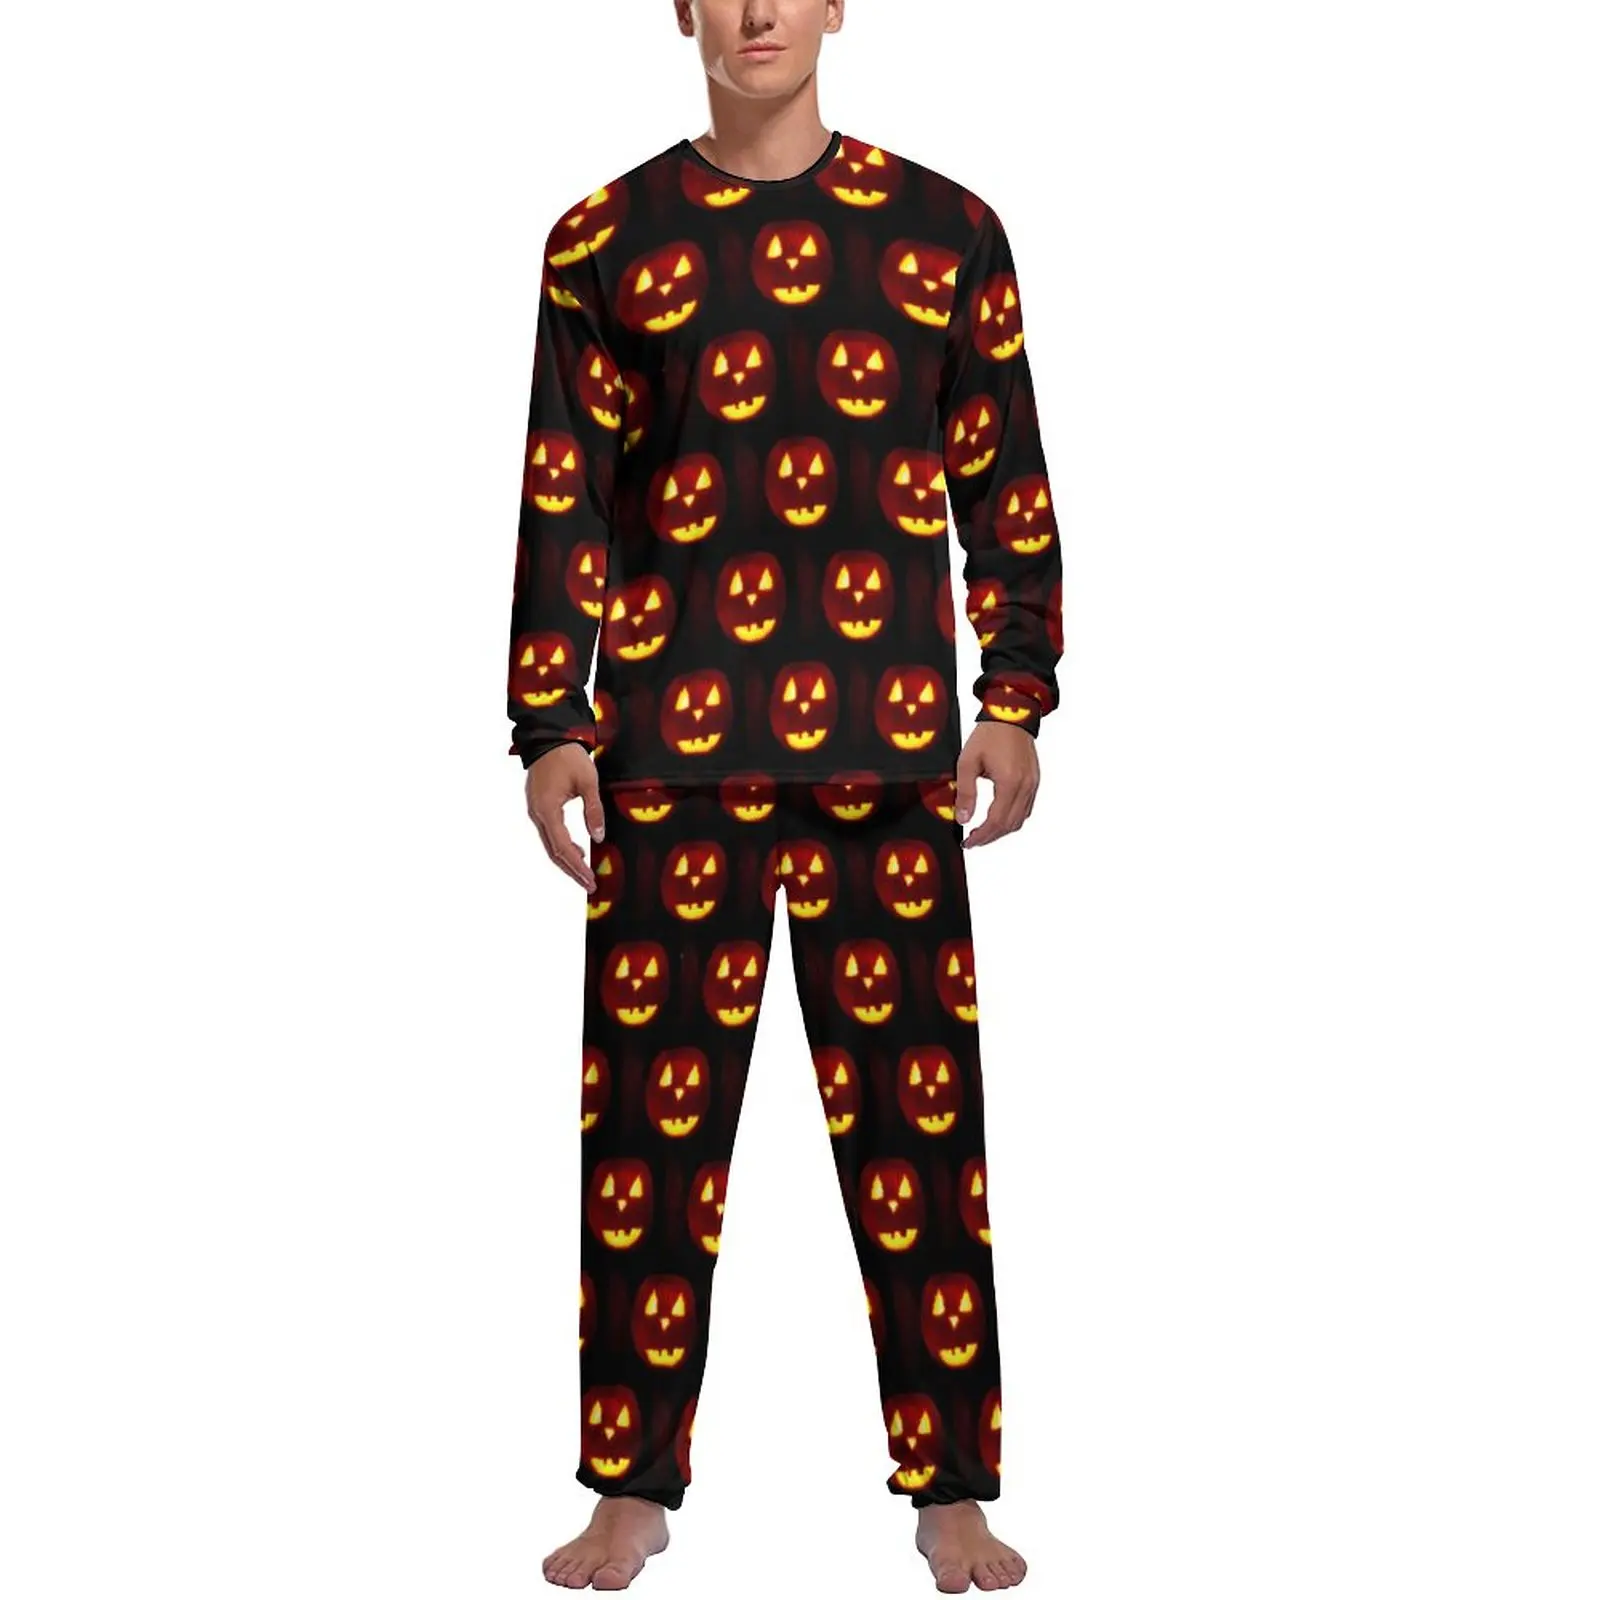 

Пижама с принтом тыквы, Весенняя традиционная Повседневная Мужская Ночная одежда на Хэллоуин, 2 предмета, милые пижамные комплекты с длинным рукавом и принтом